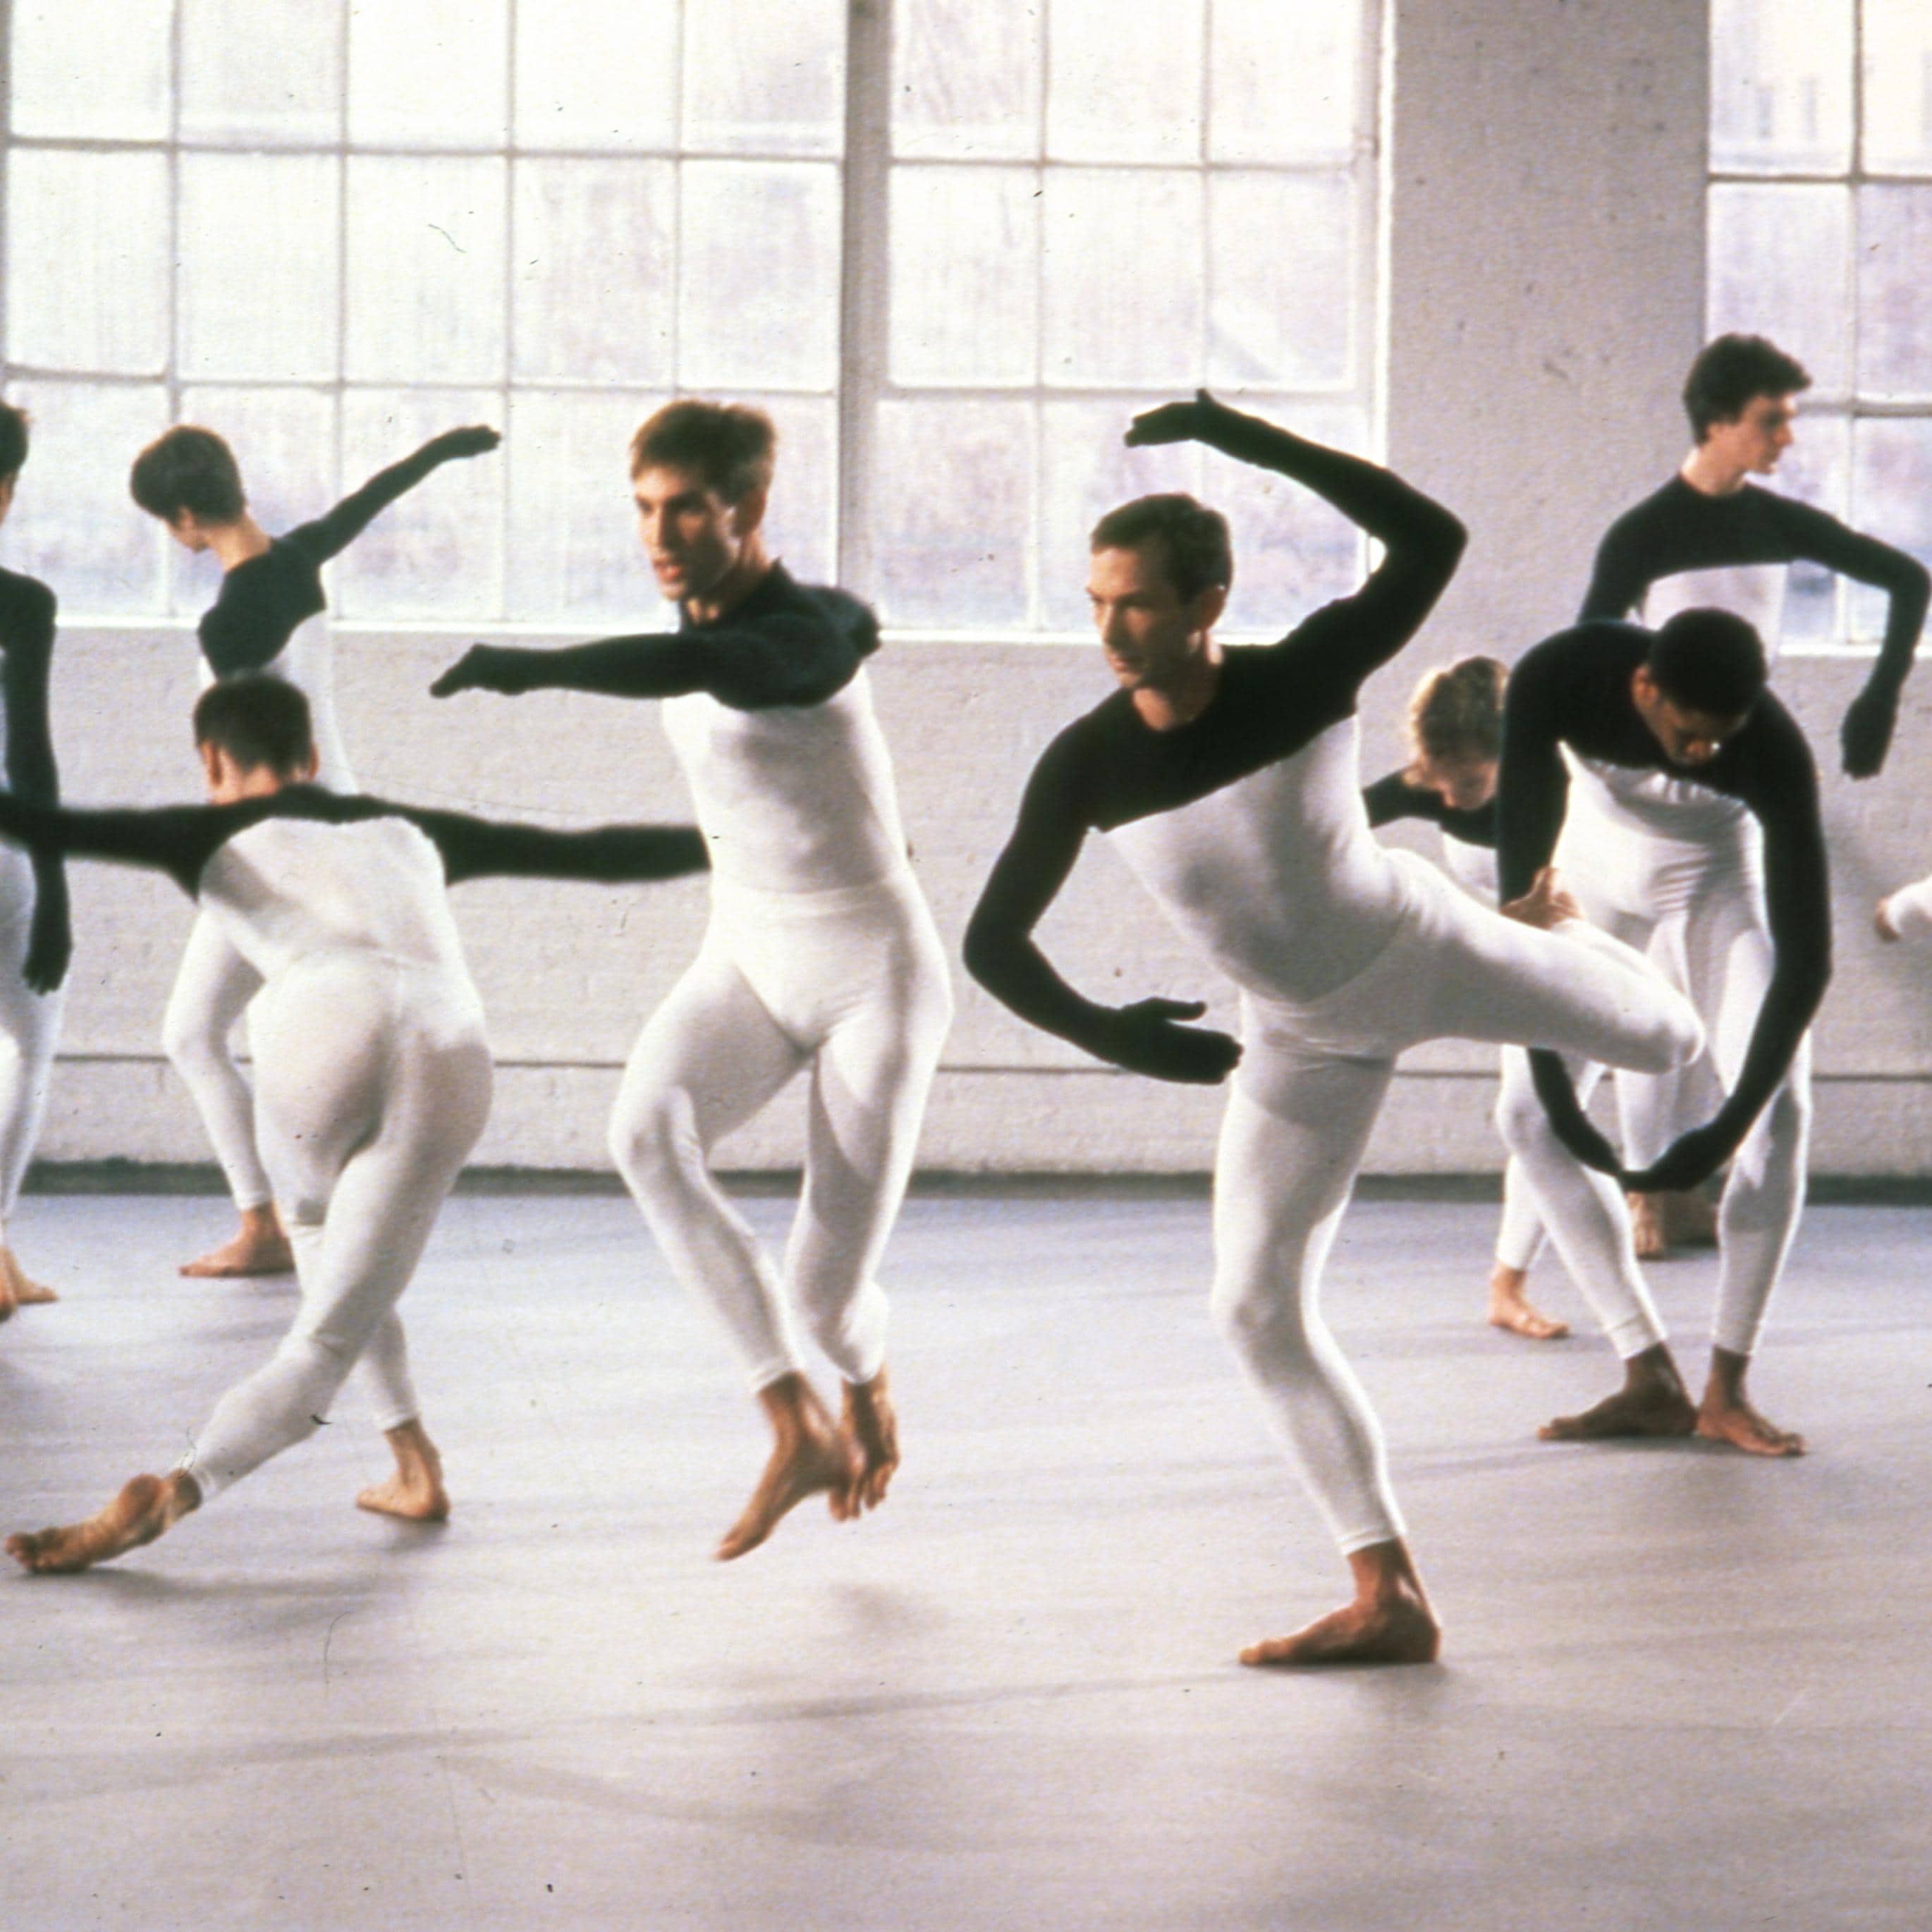 Danseurs en académique blanc avec bras noirs